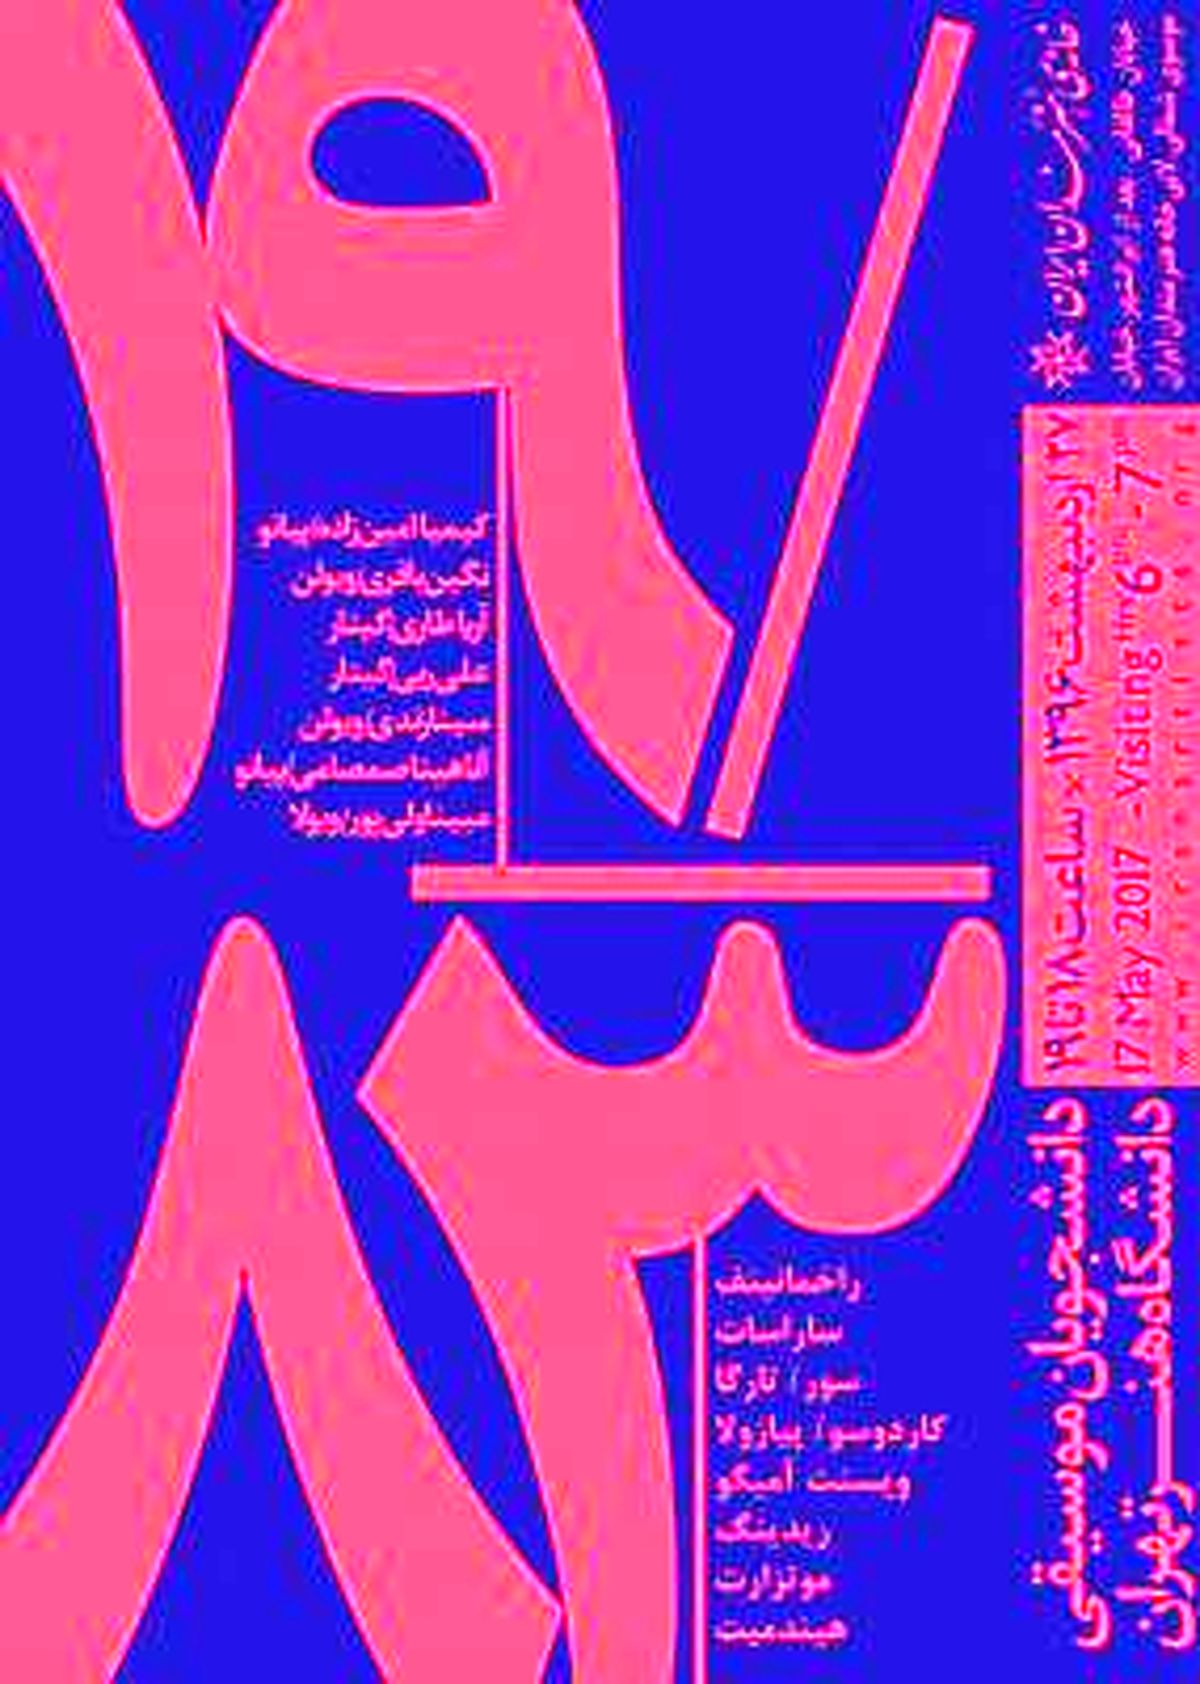 خانه هنرمندان ایران؛ میزبان کنسرت 83/ 19 از دانشجویان موسیقی دانشگاه هنر